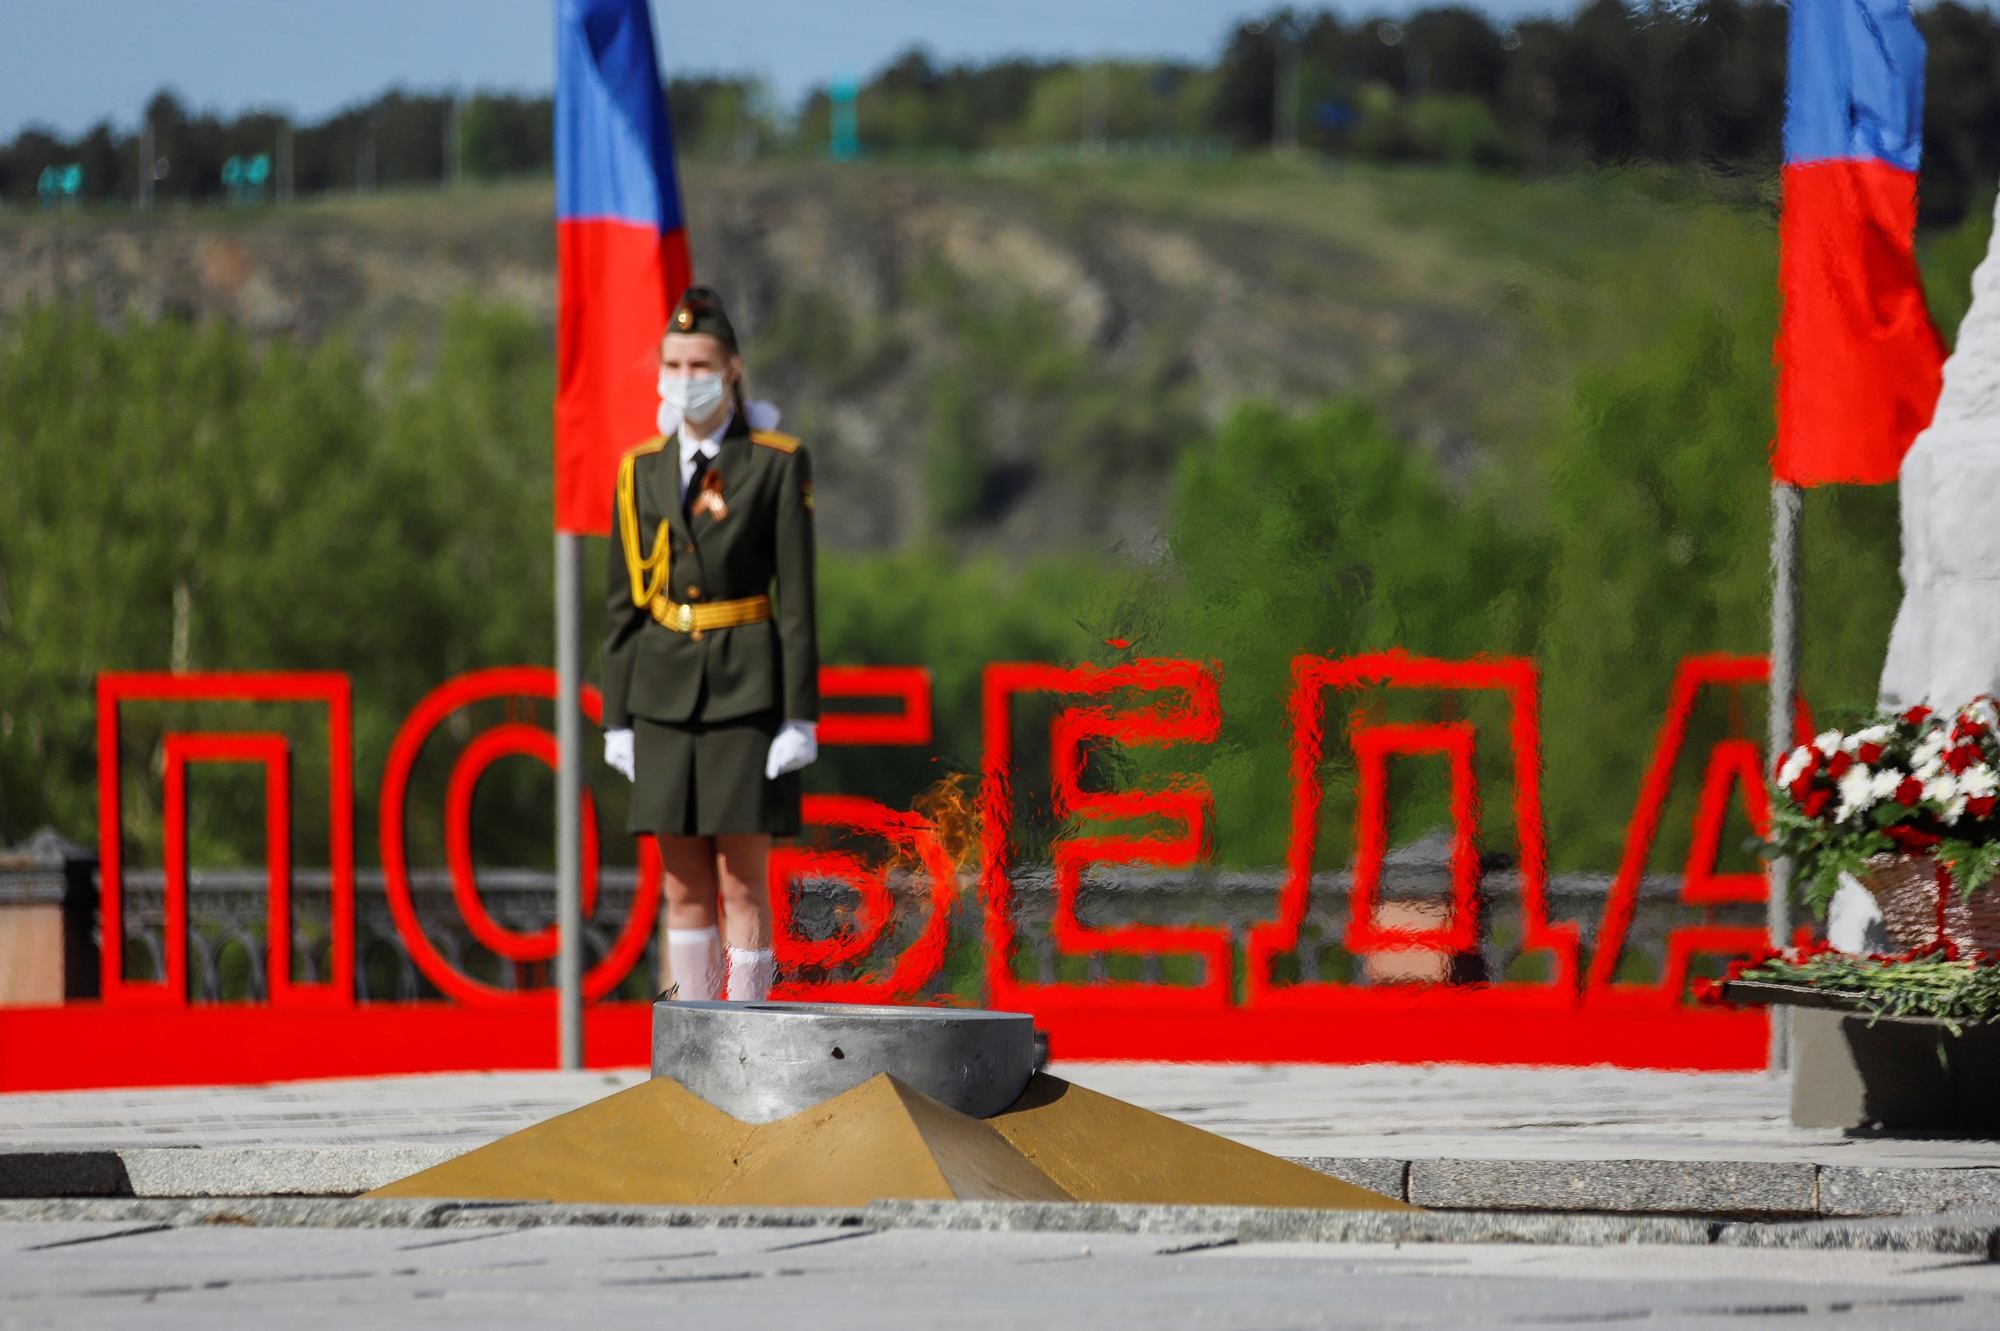 Кузбасс масштабно отметил 75-летие Победы: все ветераны получили поздравления, жители подключились к праздничным акциям и проектам